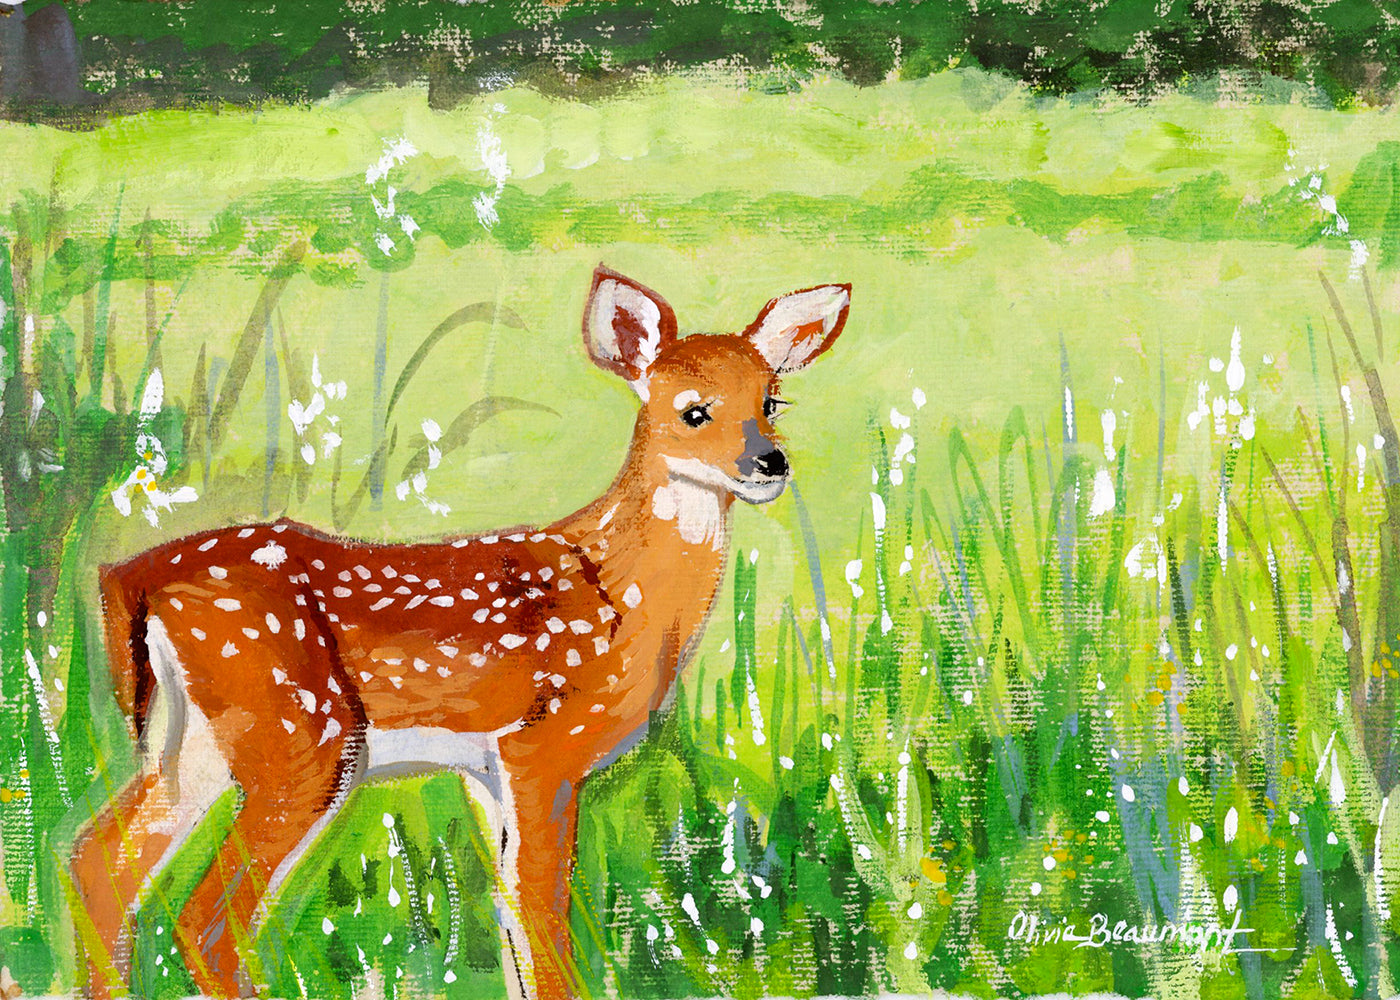 New Beginnings -deer print